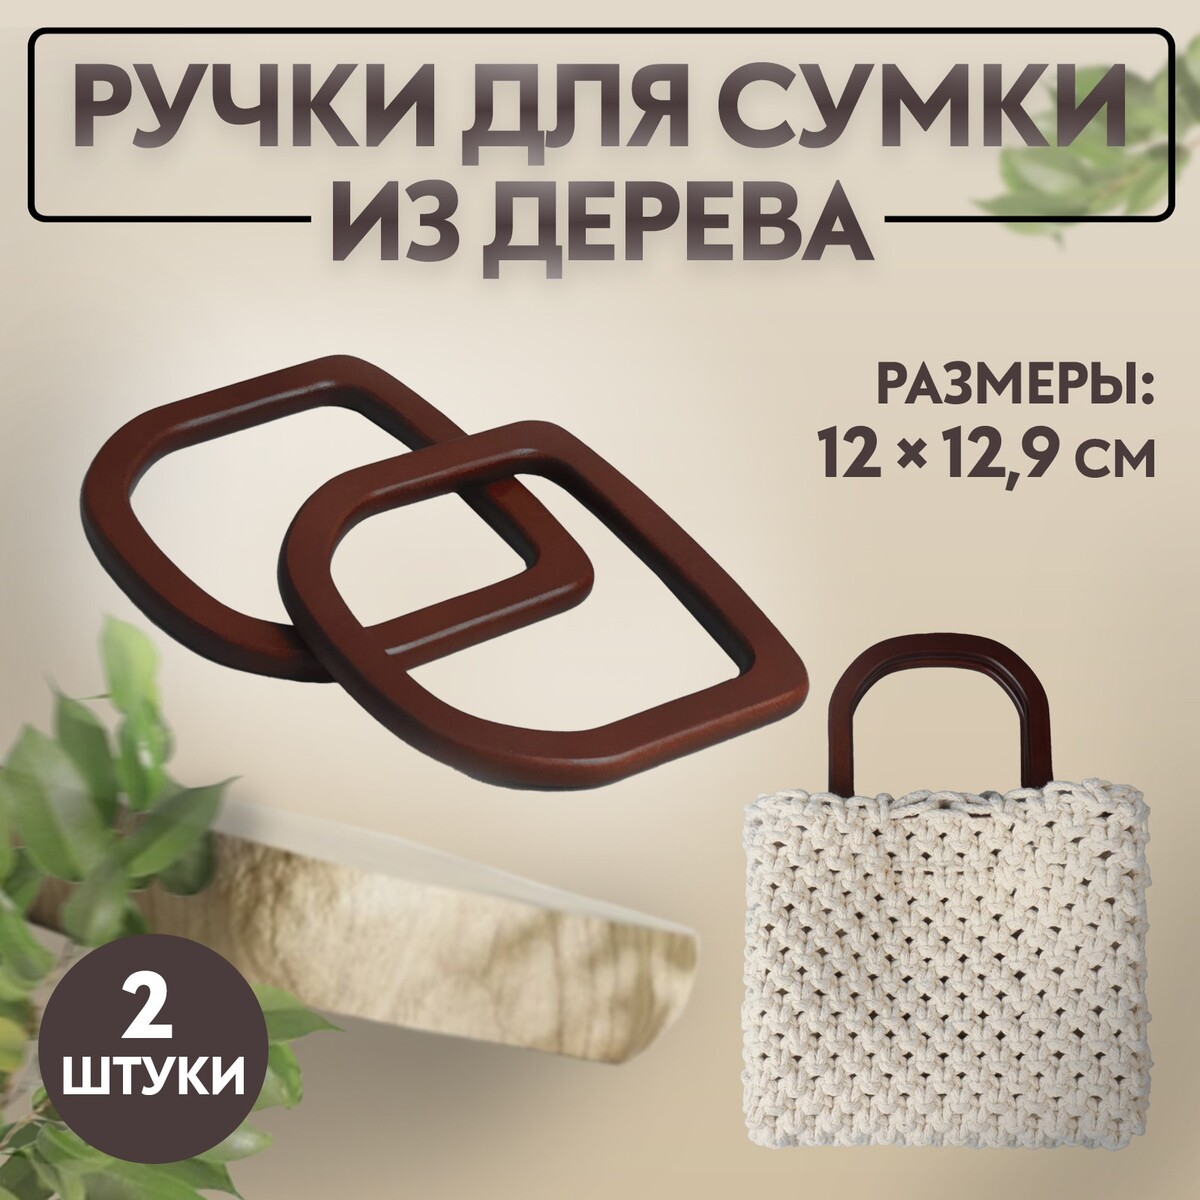 Ручки для сумки деревянные, 12 × 12,9 см, 2 шт, цвет коричневый ручки для сумок деревянные плетеные d 9 8 × 5 9 13 5 × 9 5 см 2 шт коричневый